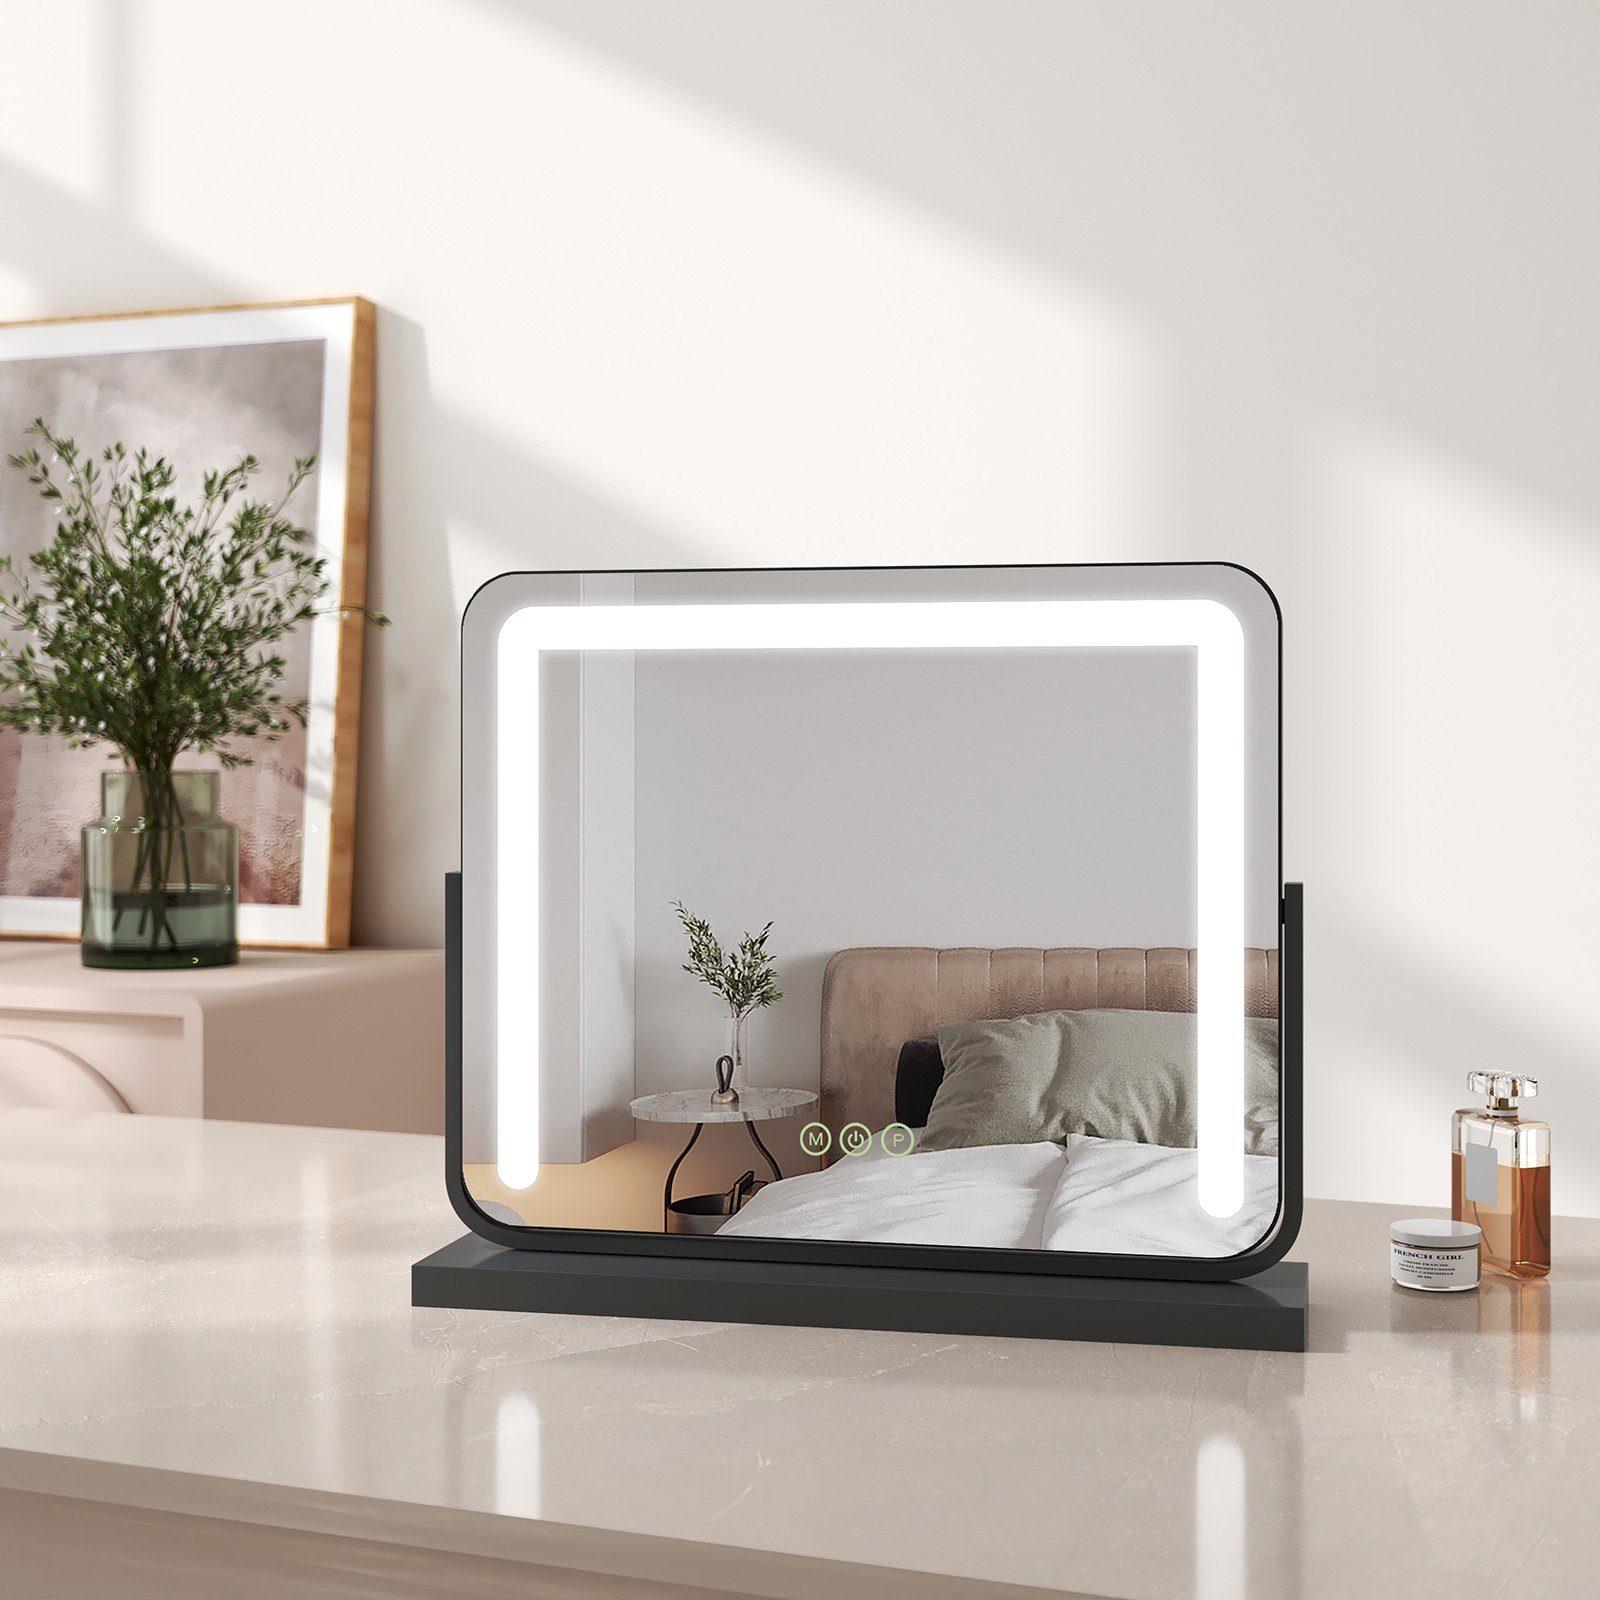 EMKE Kosmetikspiegel Schminkspiegel LED Kosmetikspiegel mit Beleuchtung Tischspiegel, mit Touch, 3 Lichtfarben Dimmbar, Memory-Funktion, 360° Drehbar Schwarz